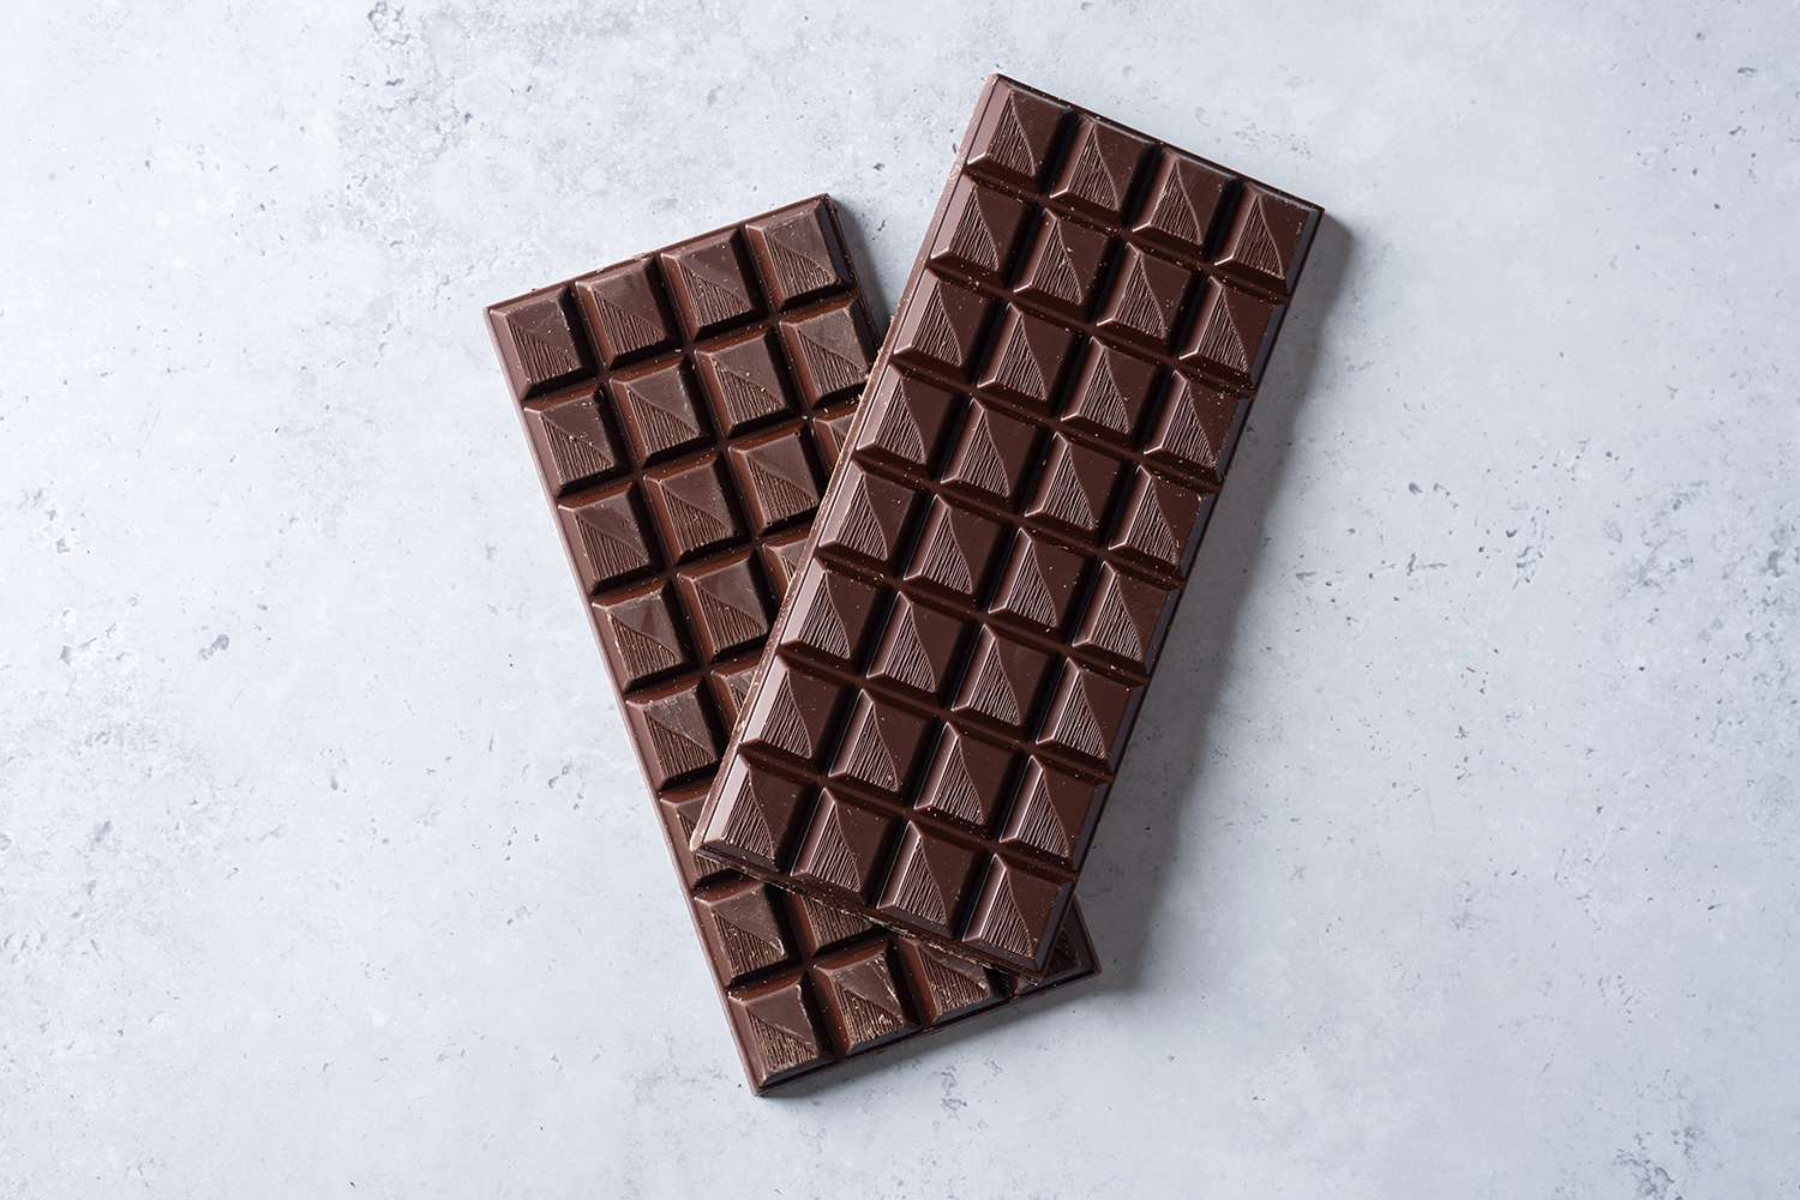 Μαύρη σοκολάτα: Είναι μύθος ότι η μαύρη σοκολάτα είναι υγιεινή;